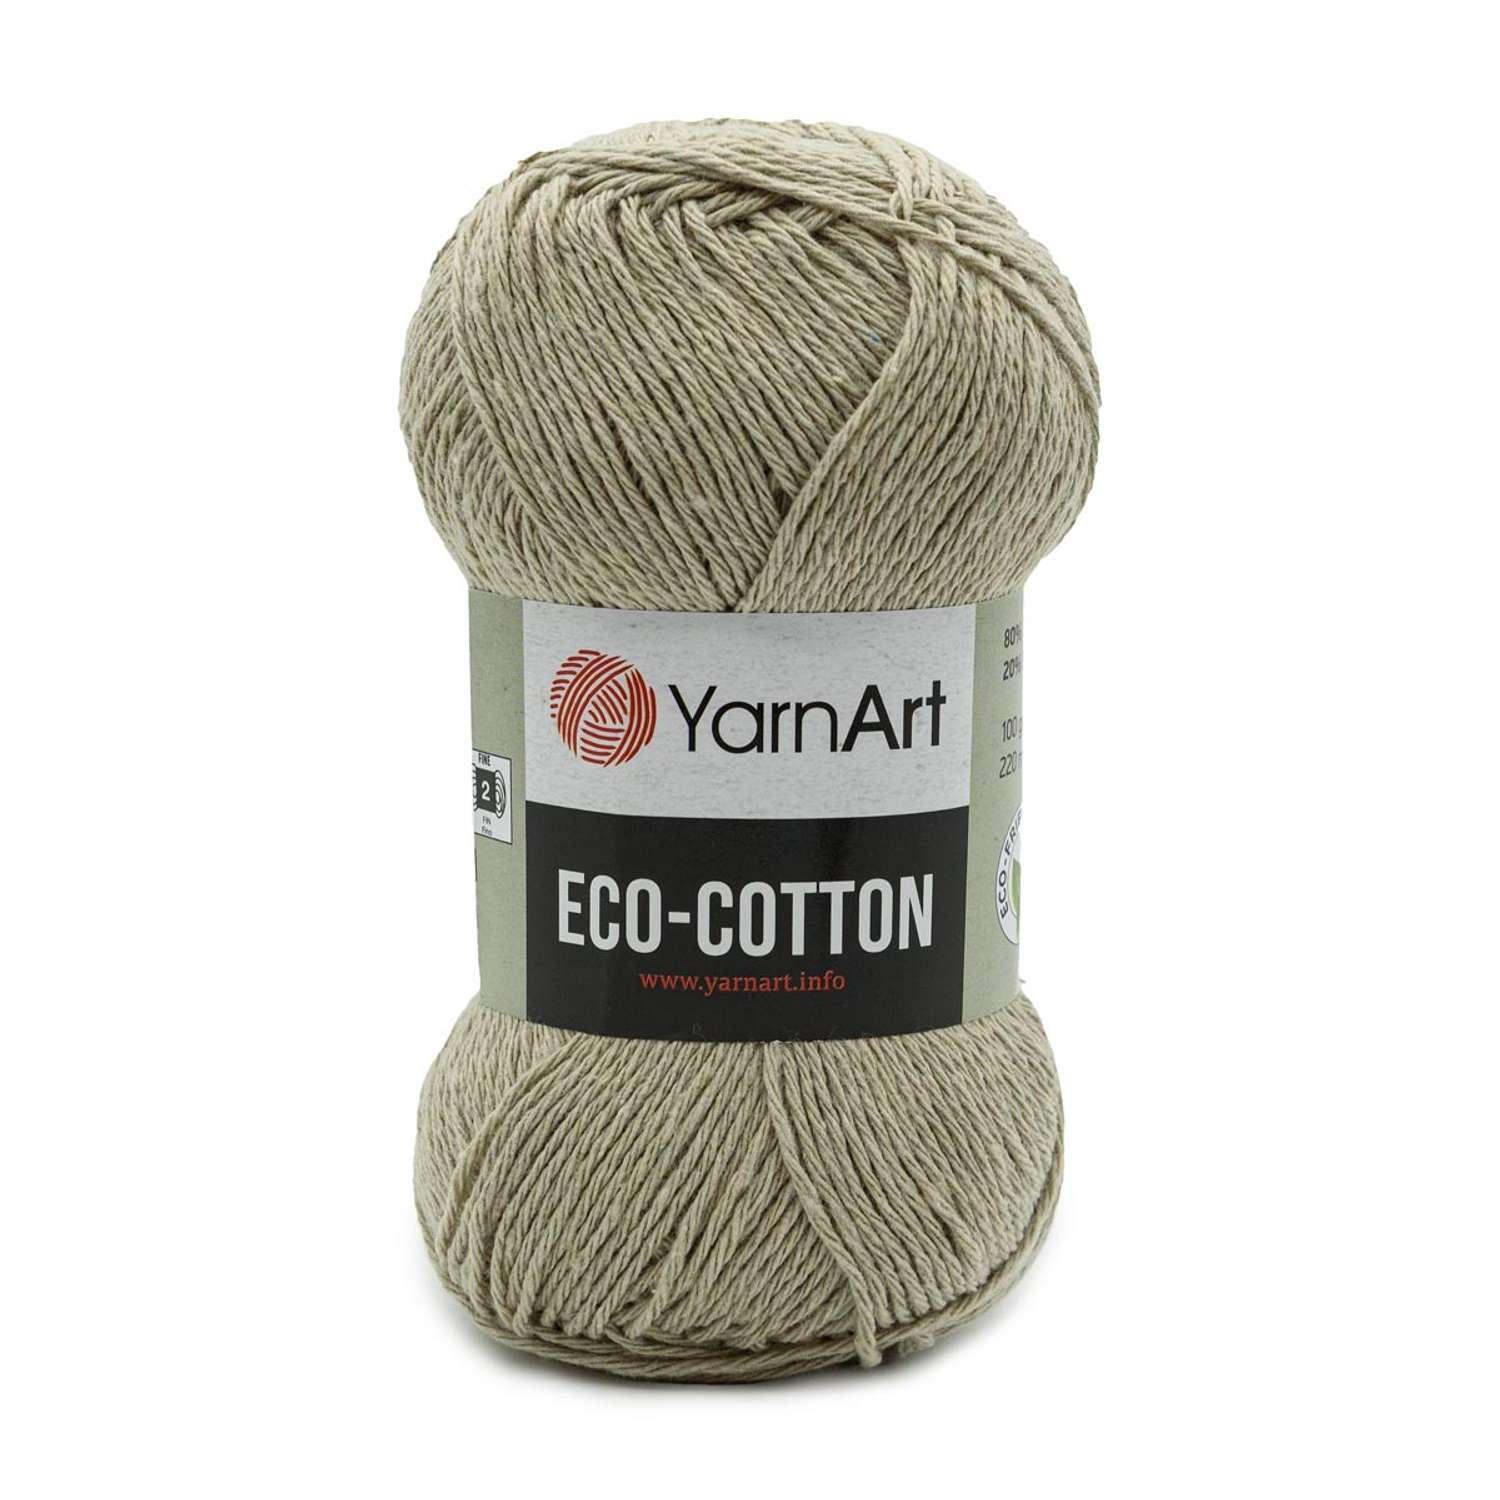 Пряжа YarnArt Eco Cotton комфортная для летних вещей 100 г 220 м 768 холодный беж 5 мотков - фото 6